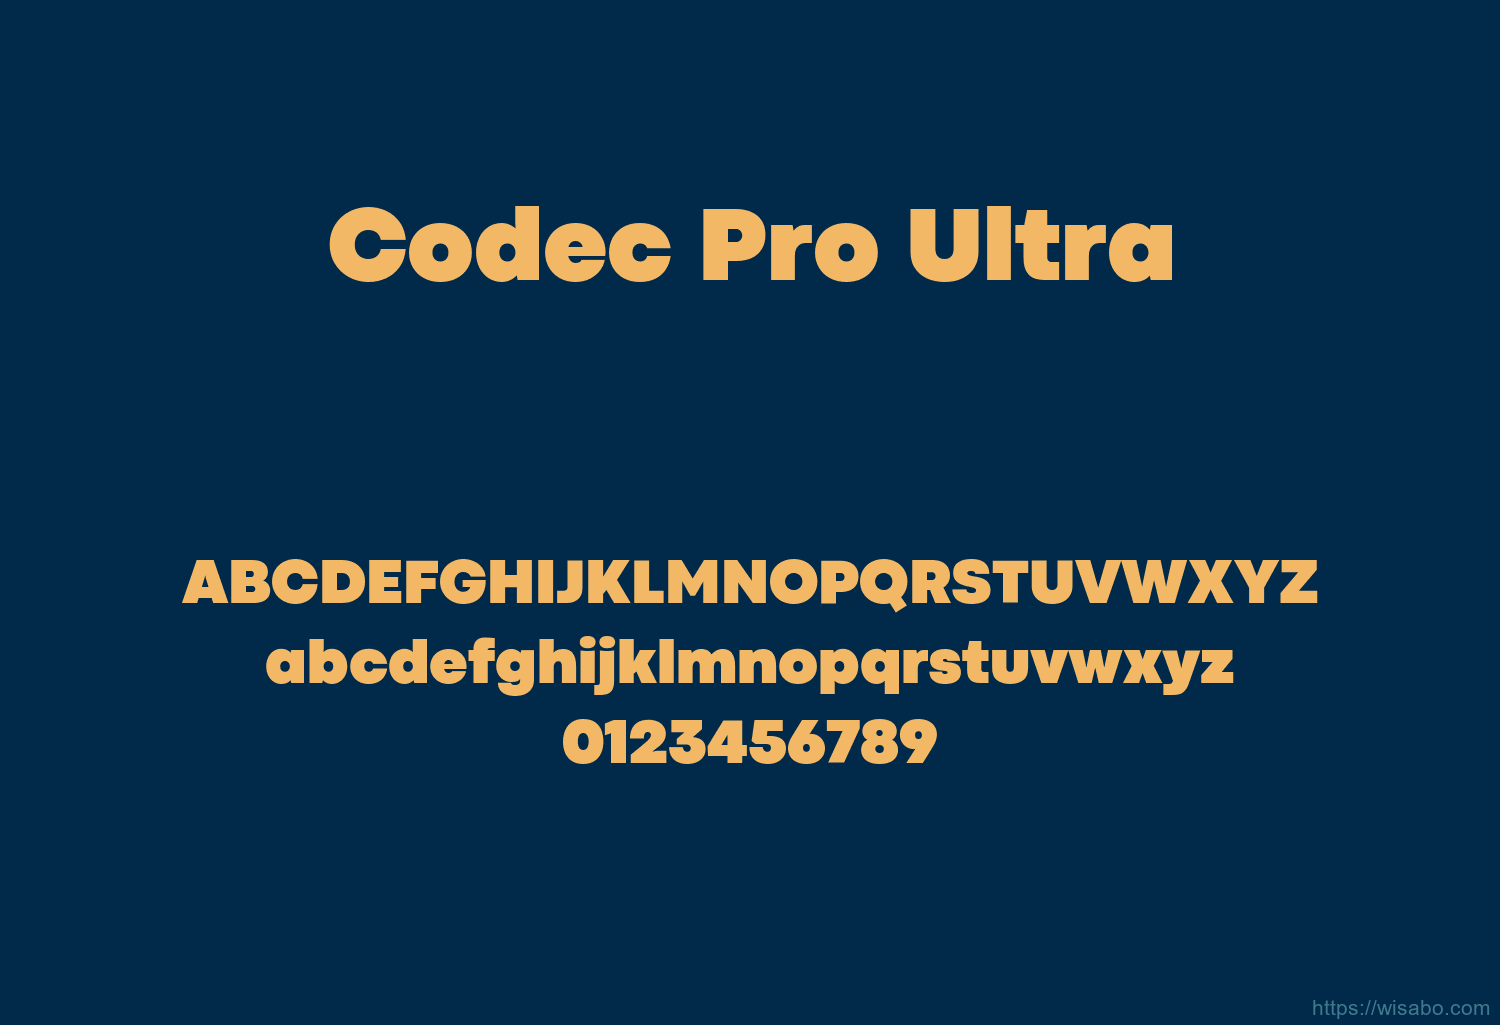 Codec Pro Ultra